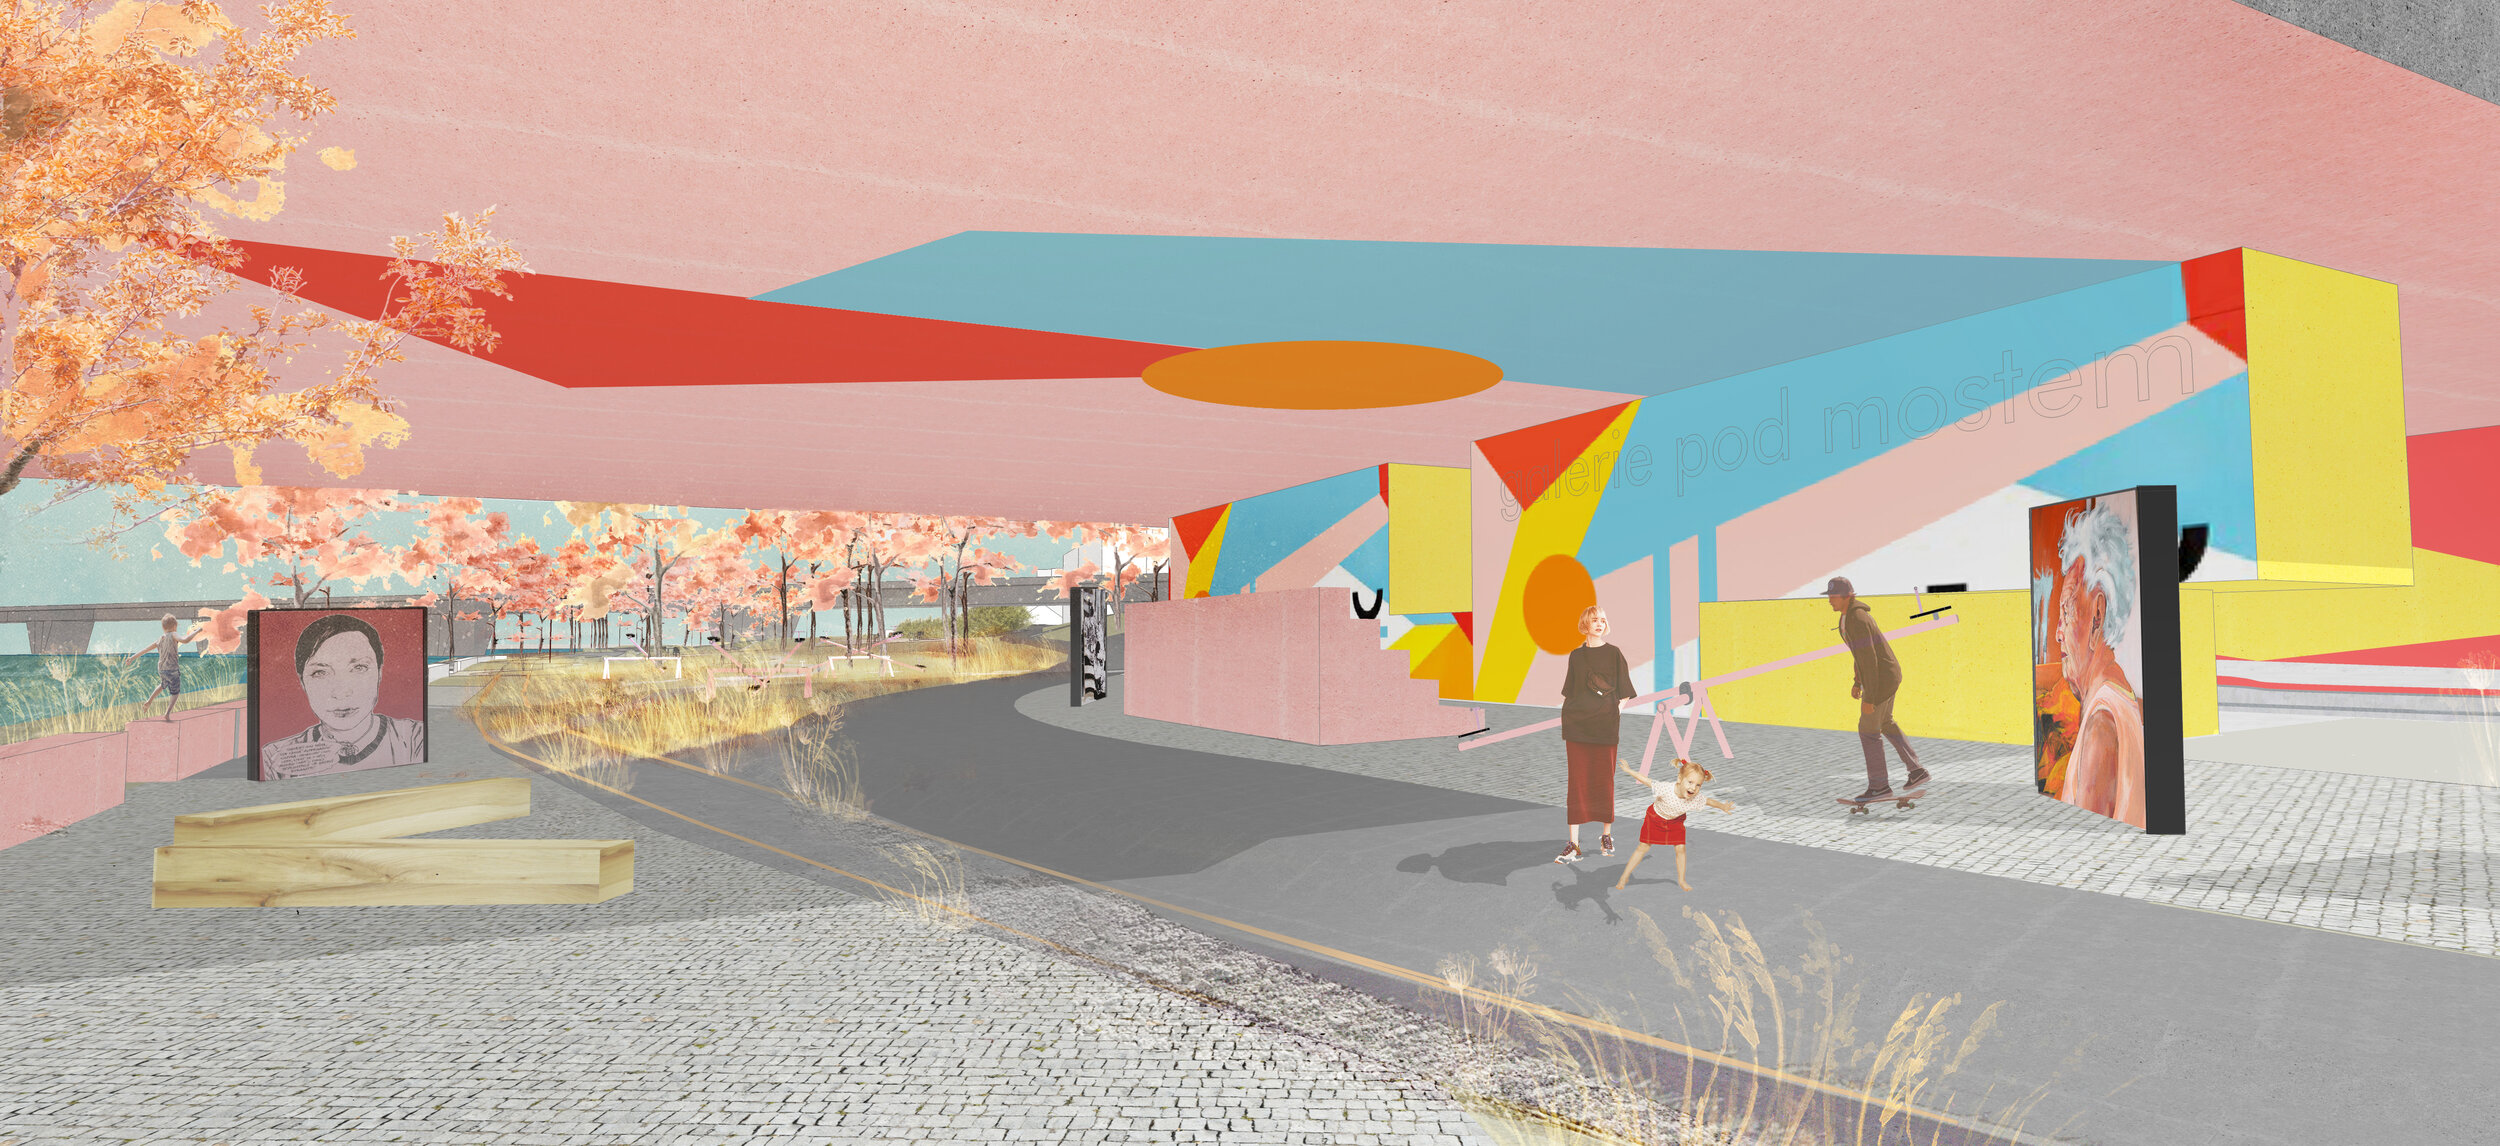  plocha pro mostem Barikádníků s novým využitím pro venkovní galerii a skatepark 